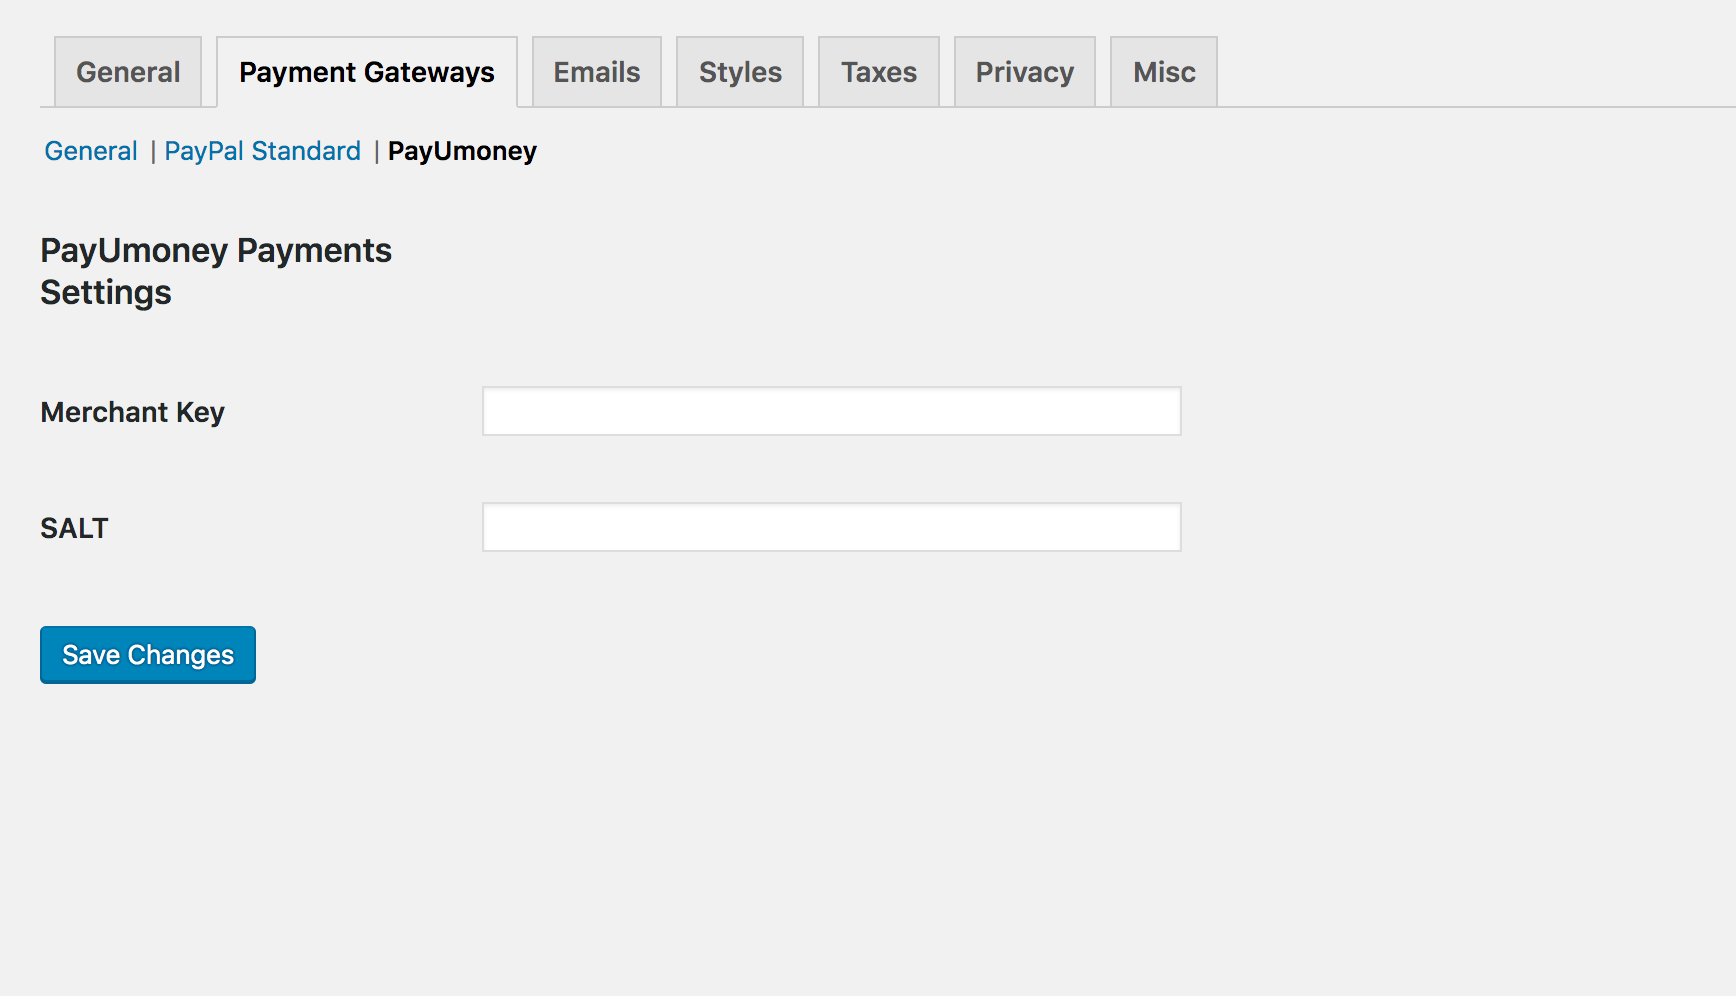 PayUmoney payment gateway settings.